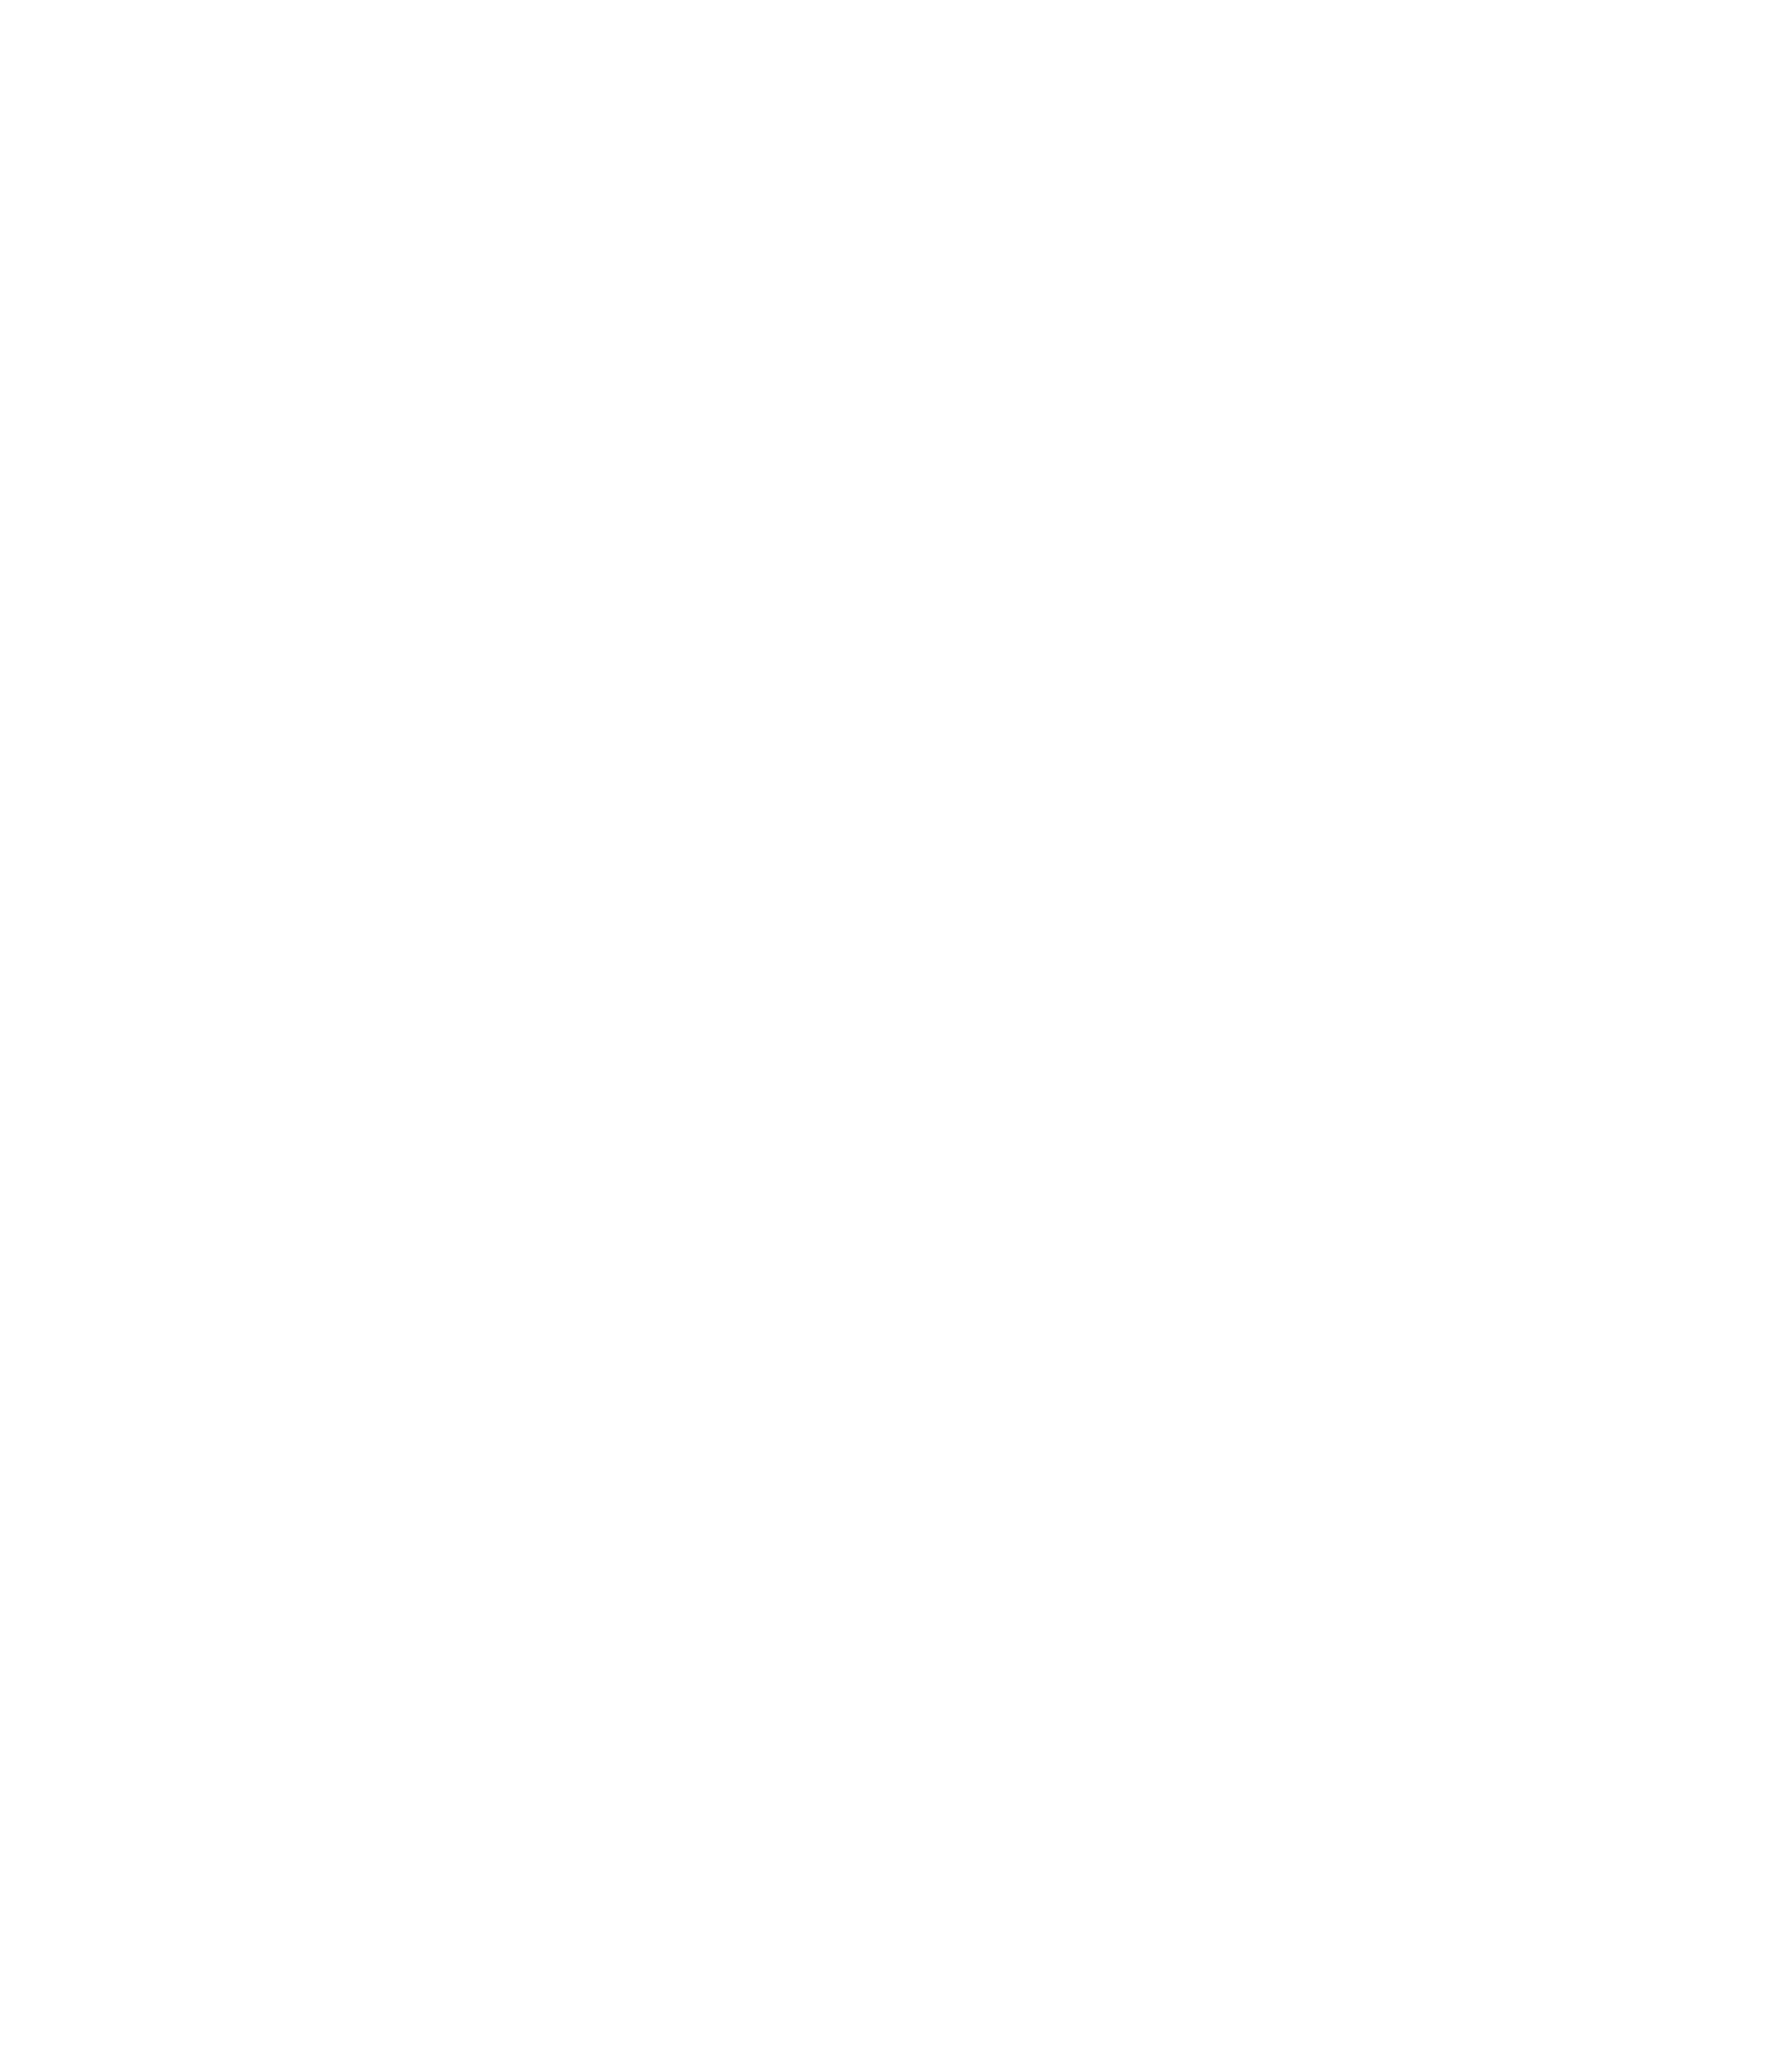 Contact Cycle Dublin Bike Tours